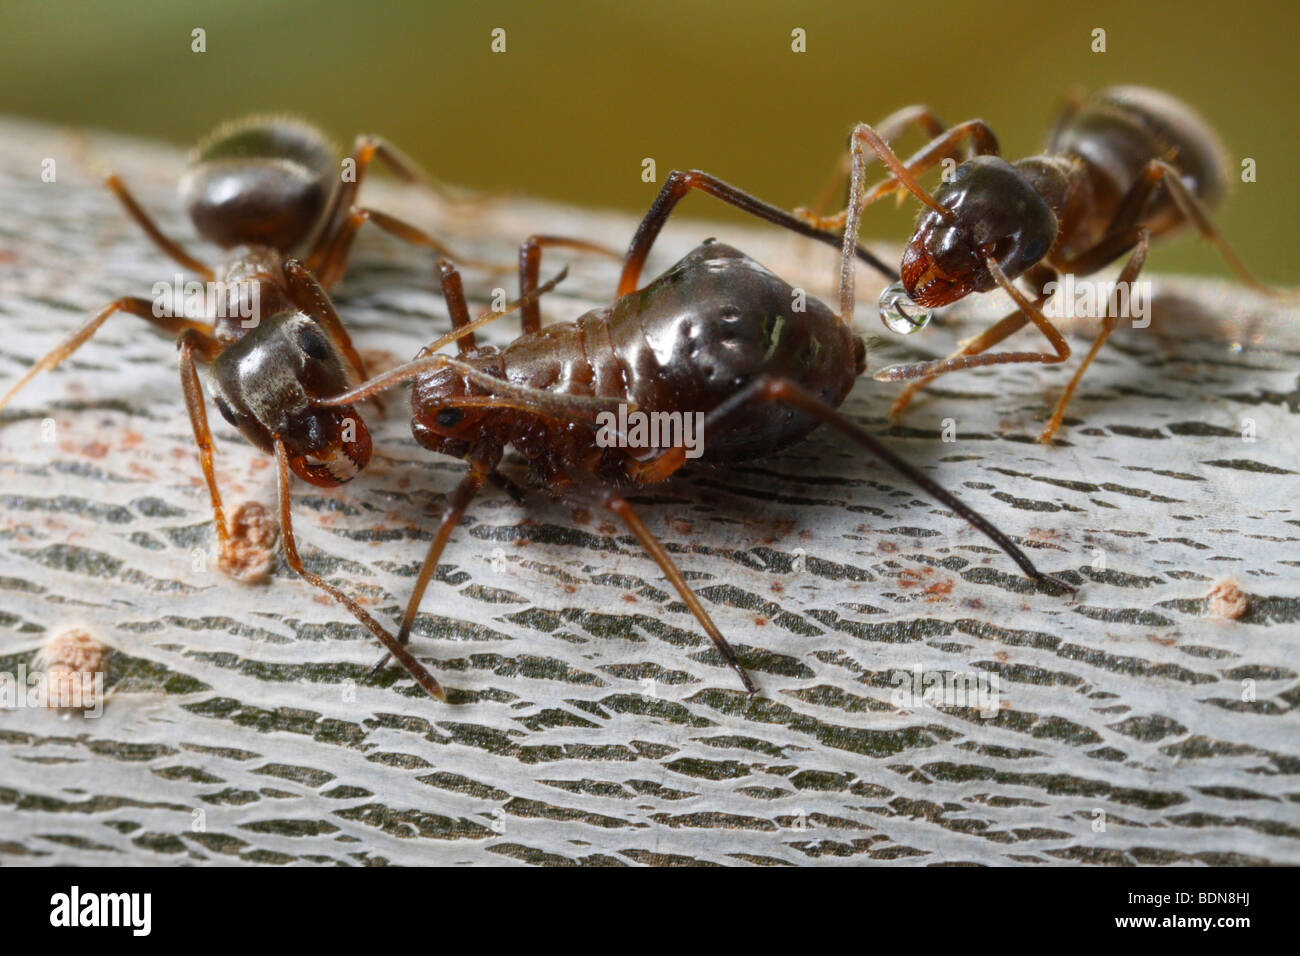 Dos hormigas negra de jardín (Lasius niger) ordeño (probablemente un áfido Lachnus spec.) en una ramita de roble. Foto de stock